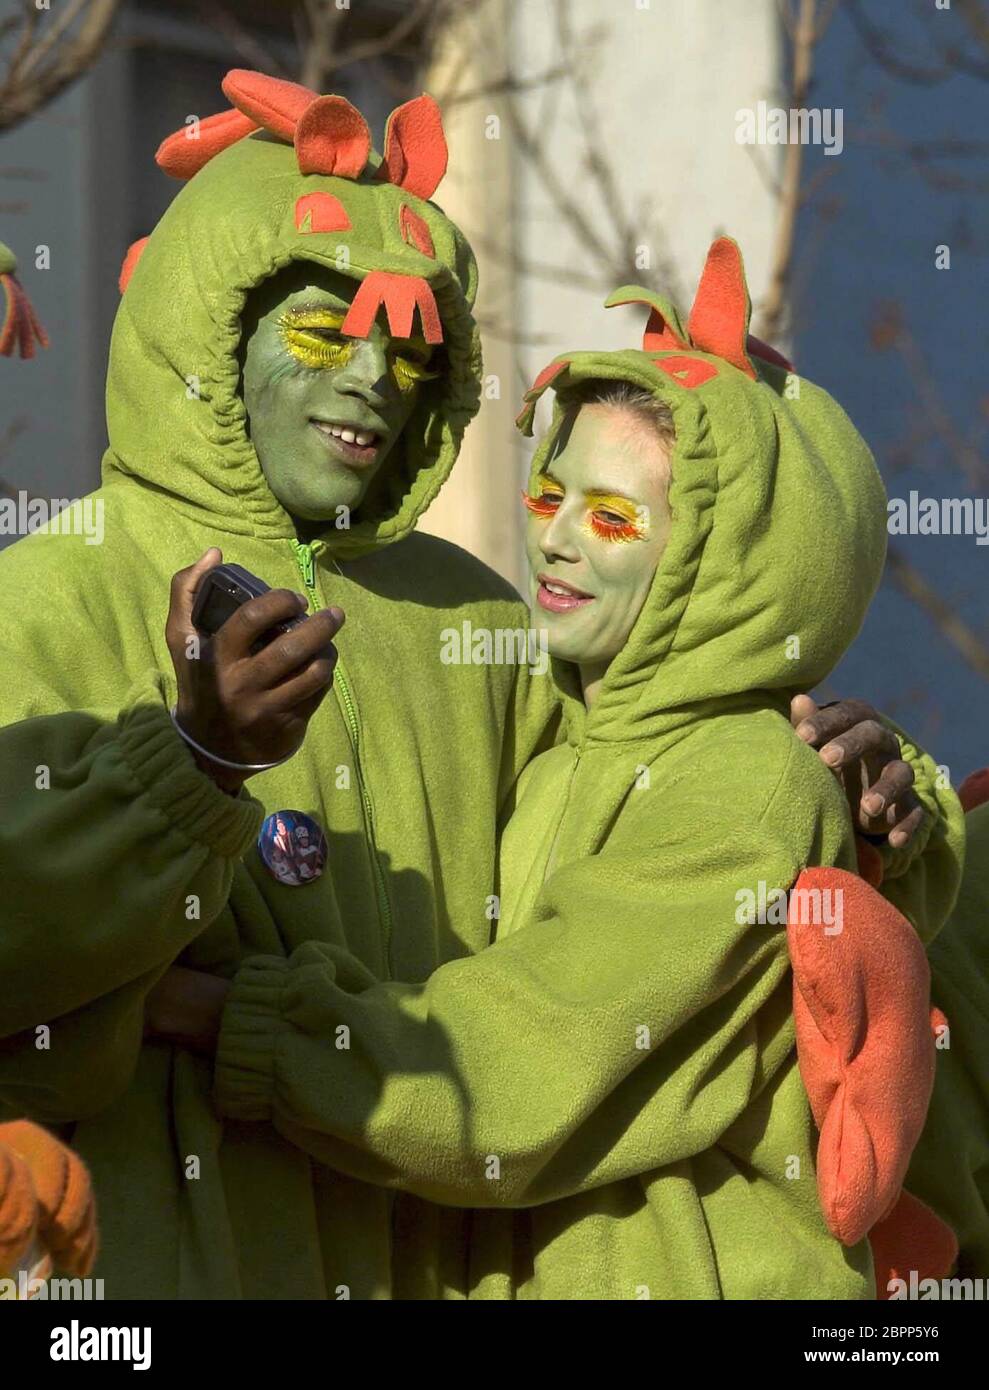 Karnevalsumzug mit Heidi Klum - Das deutsche Model Heidi Klum und ihr britischer Ehemann Seal beim Karnevalsumzug in Klum´s Heimatstadt Bergisch-Gladbach. Stock Photo